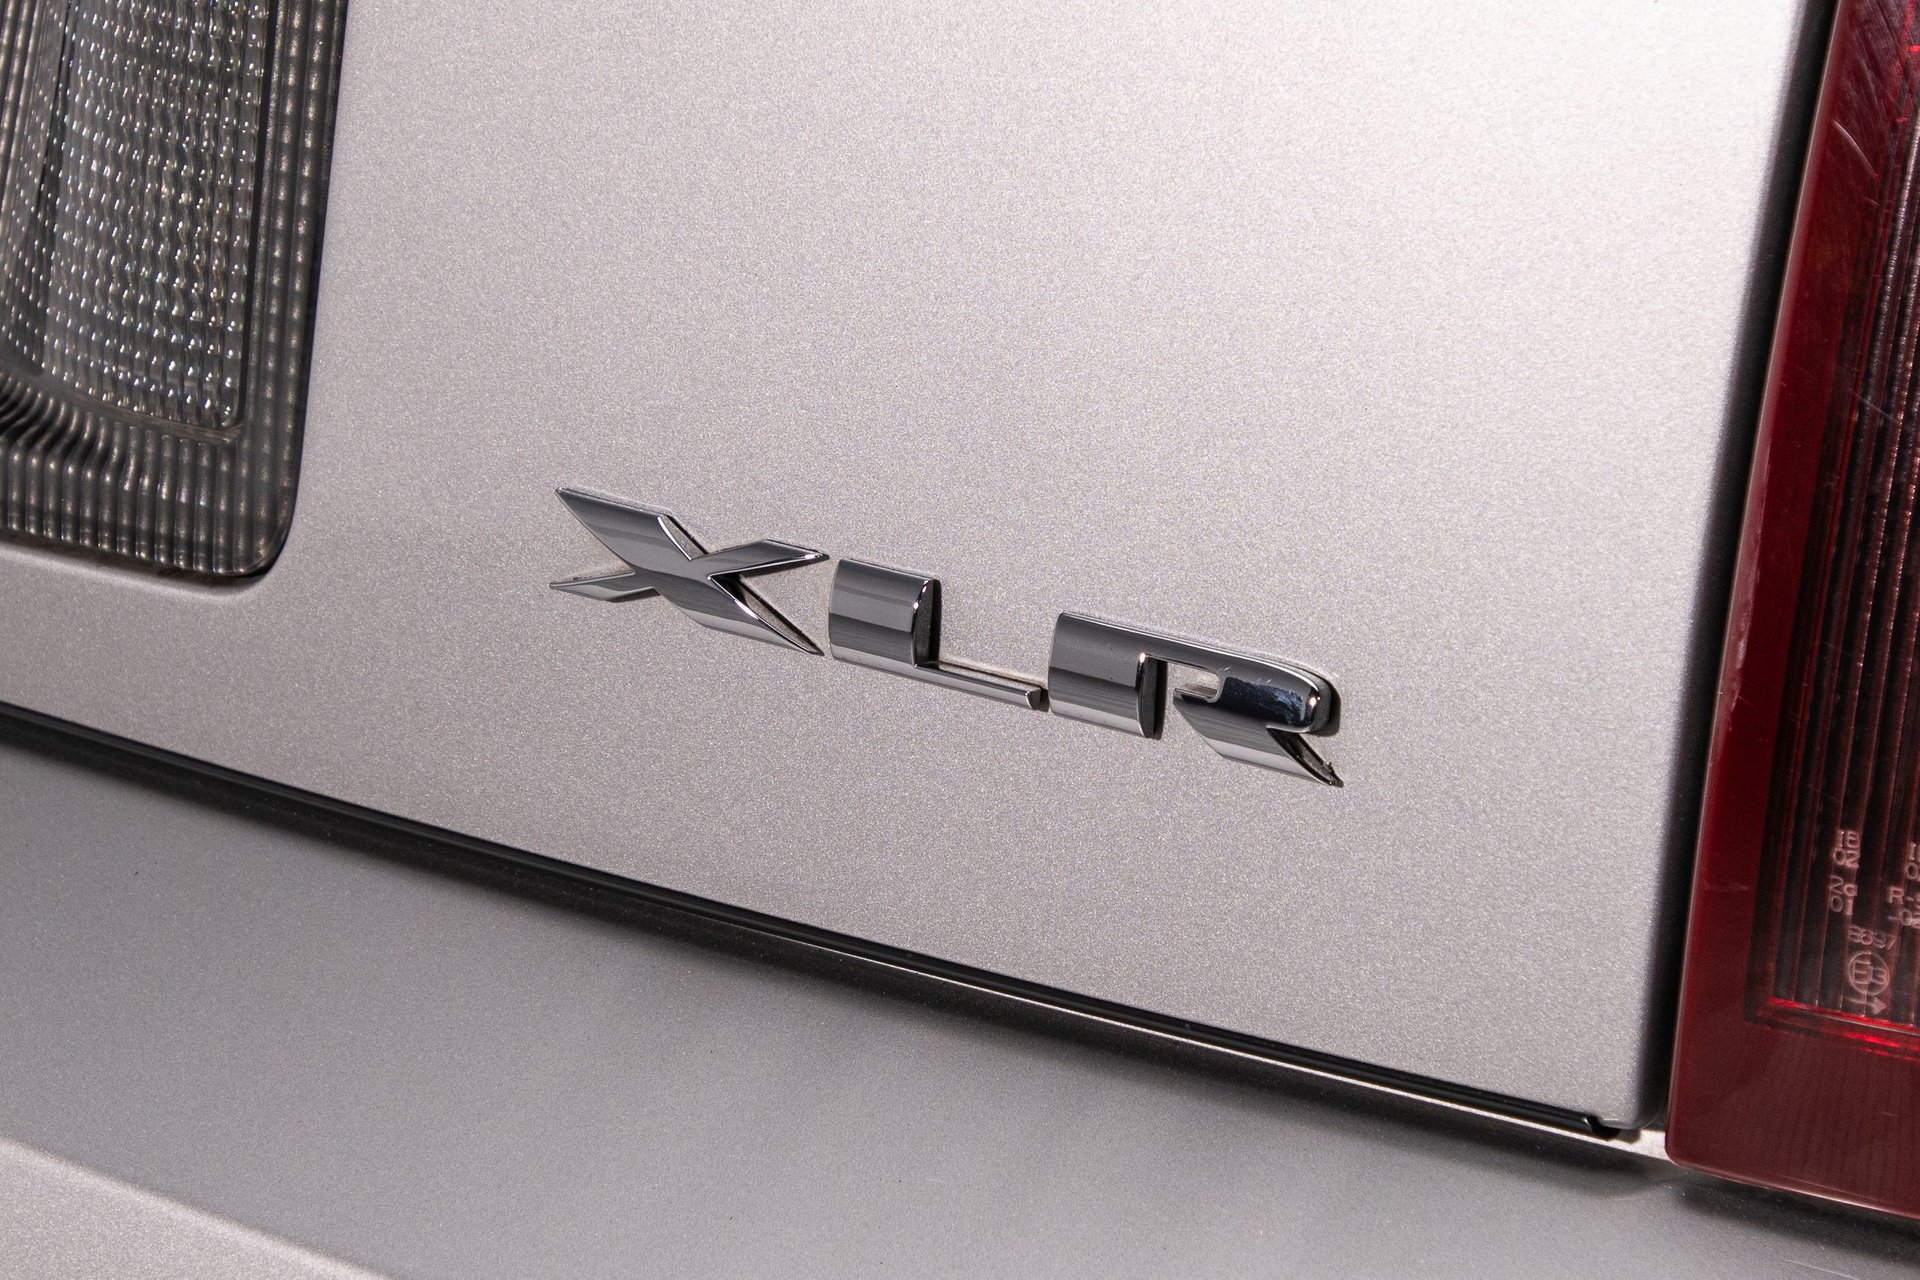 For Sale 2006 Cadillac XLR-V